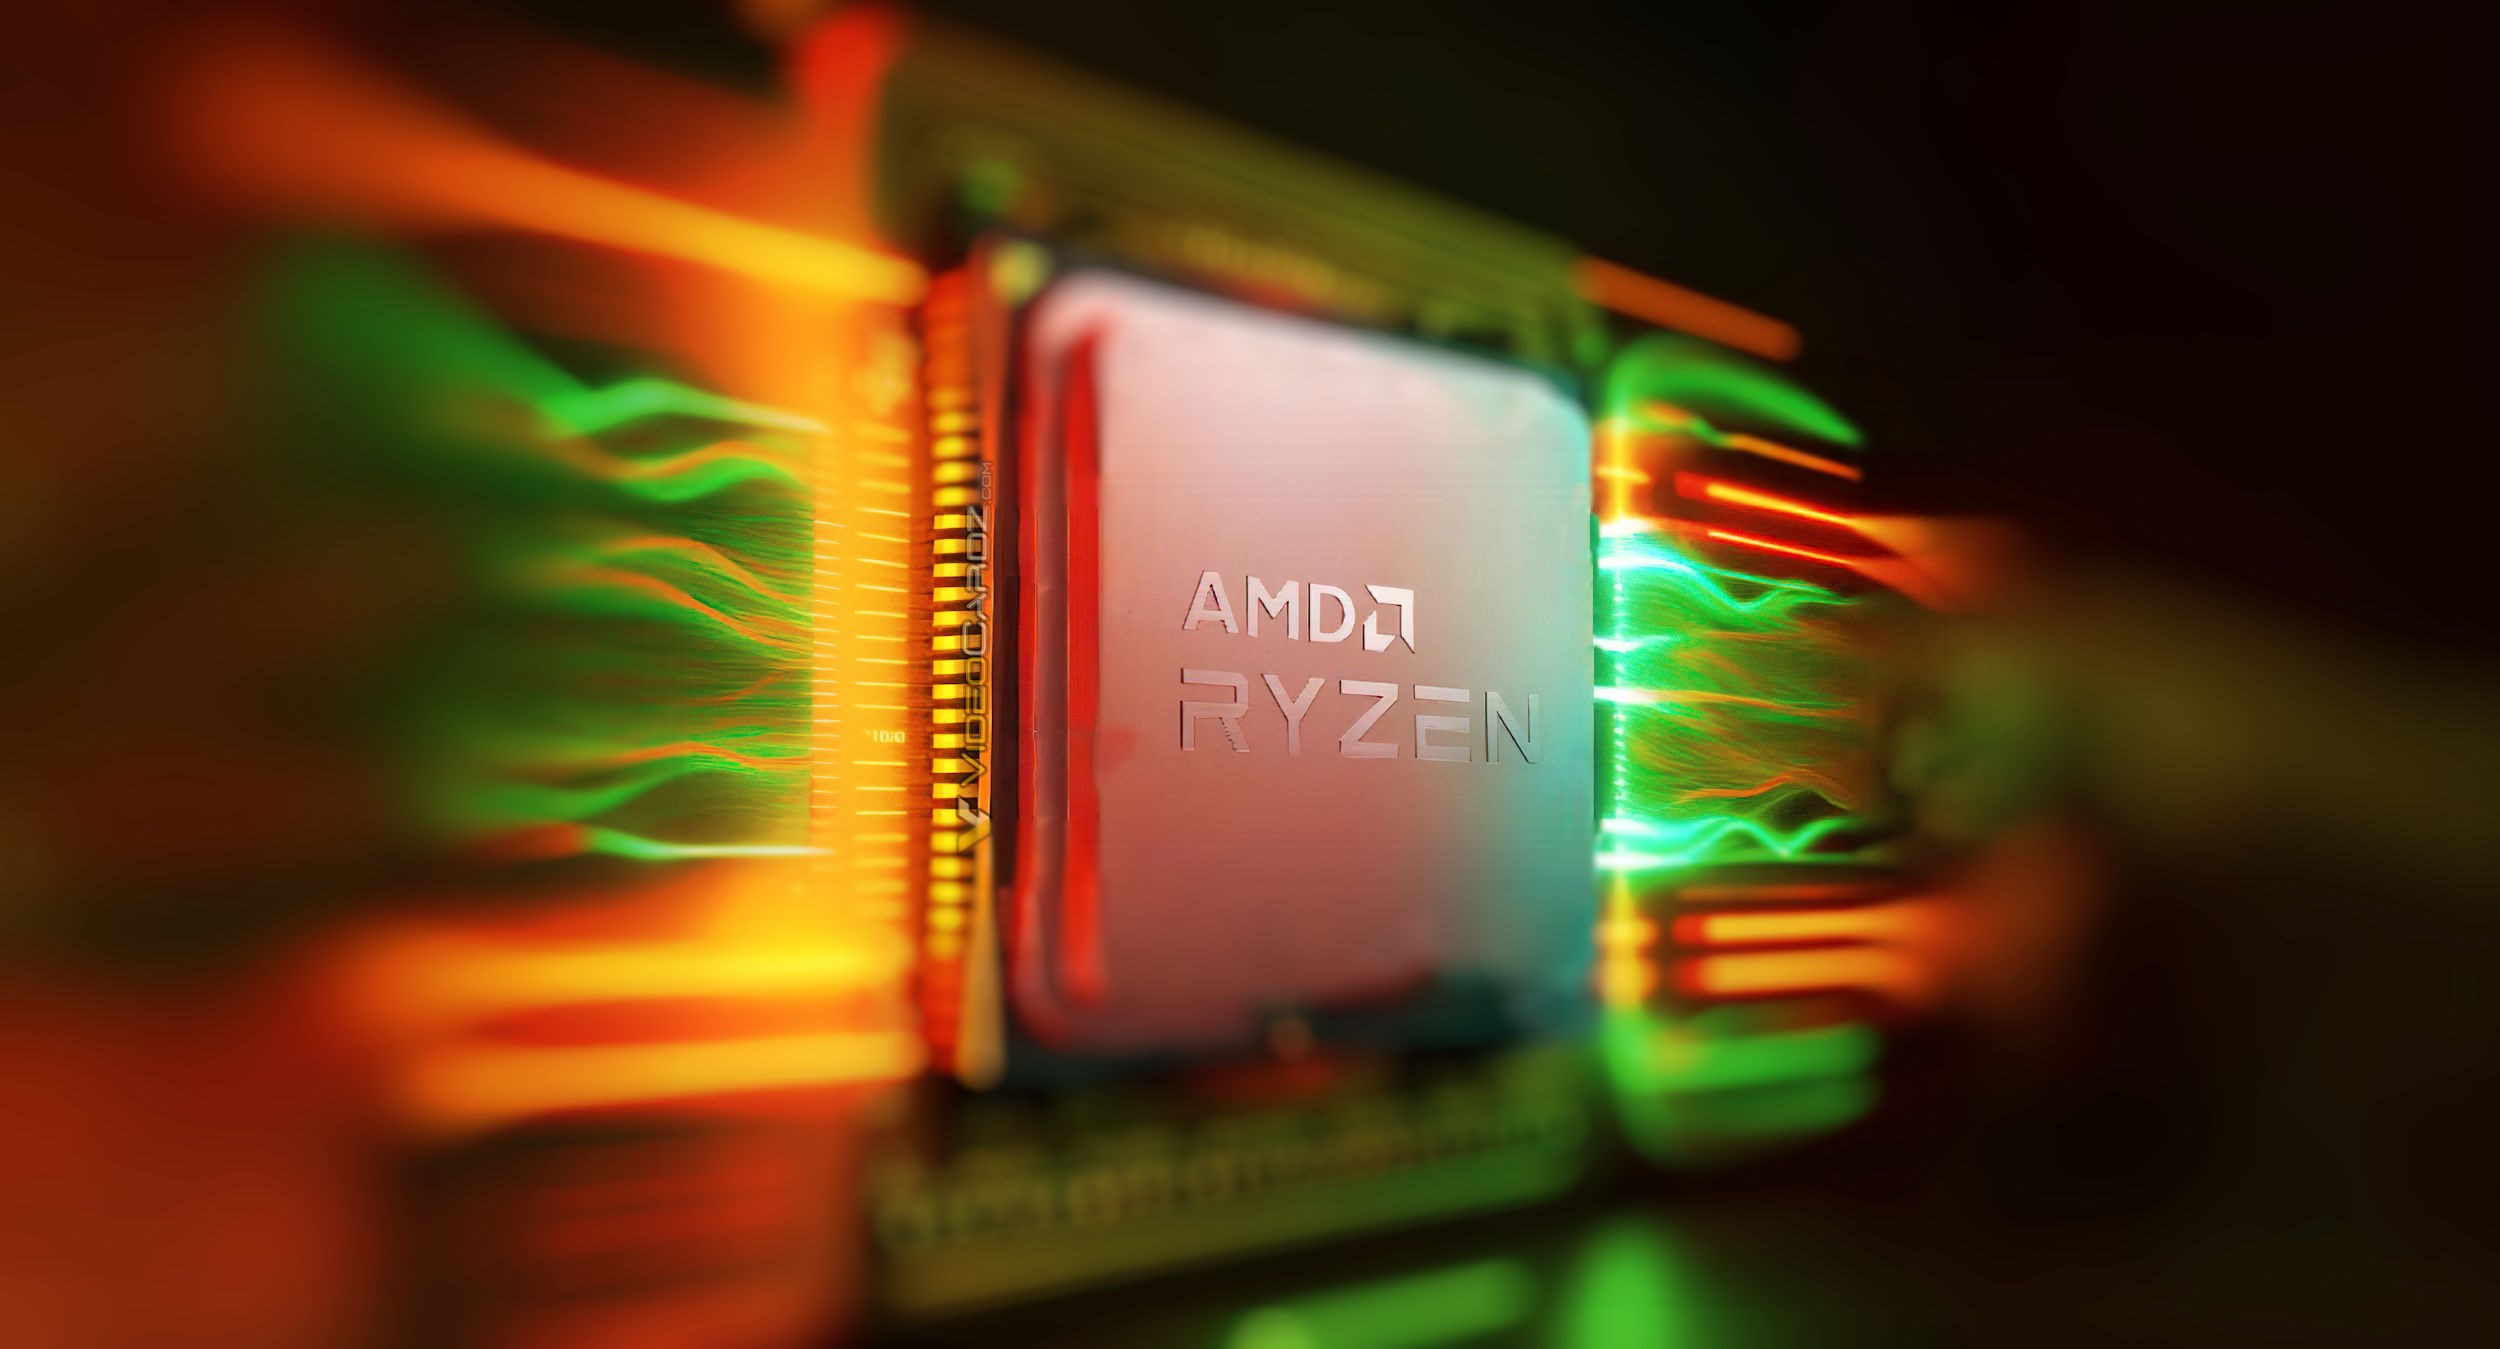 AMD Strix Point APU'lar ufukta göründü: Steam Deck 2 mi geliyor?